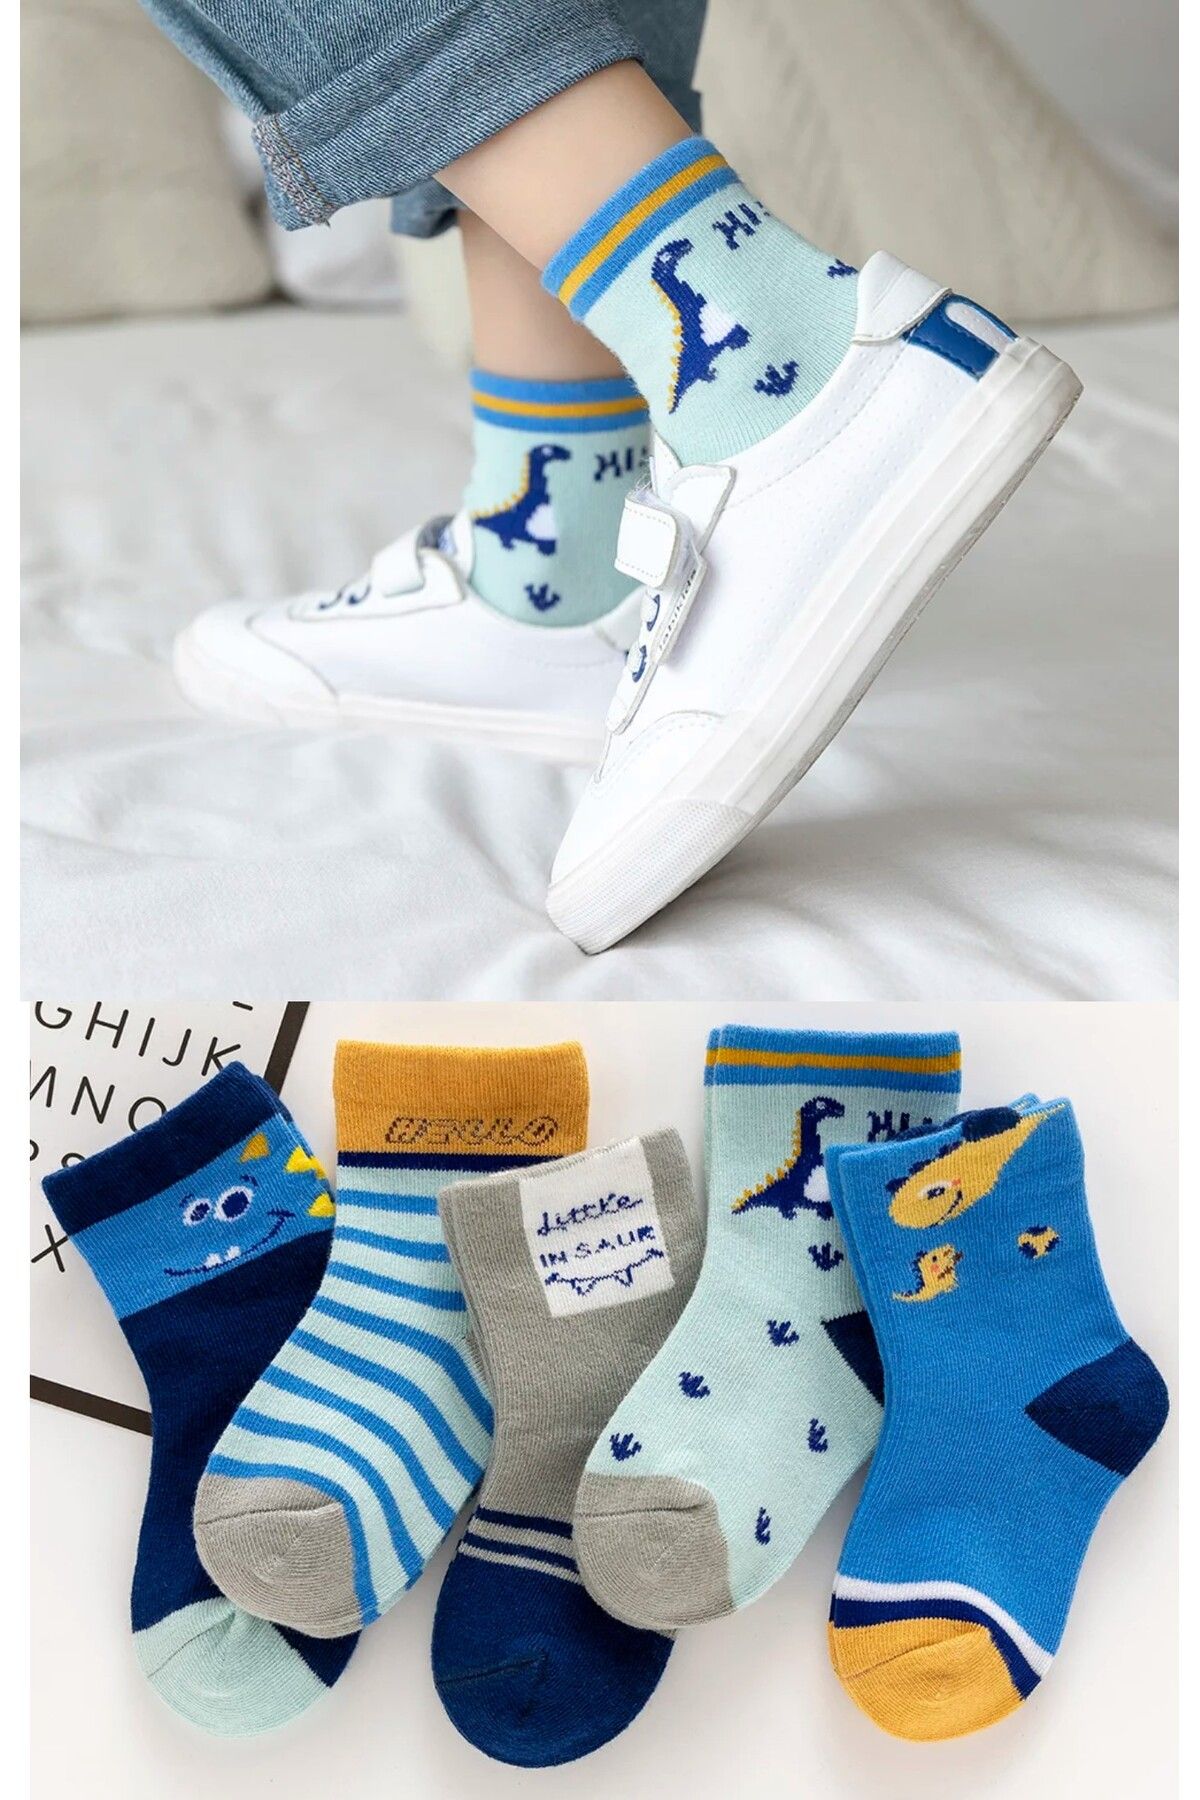 Hobins Sportswear Company 5 Çift Dinazor Desenli İndigo Bebek Çorap Ve Çocuk Çorabı Özel Dinozor Serisi